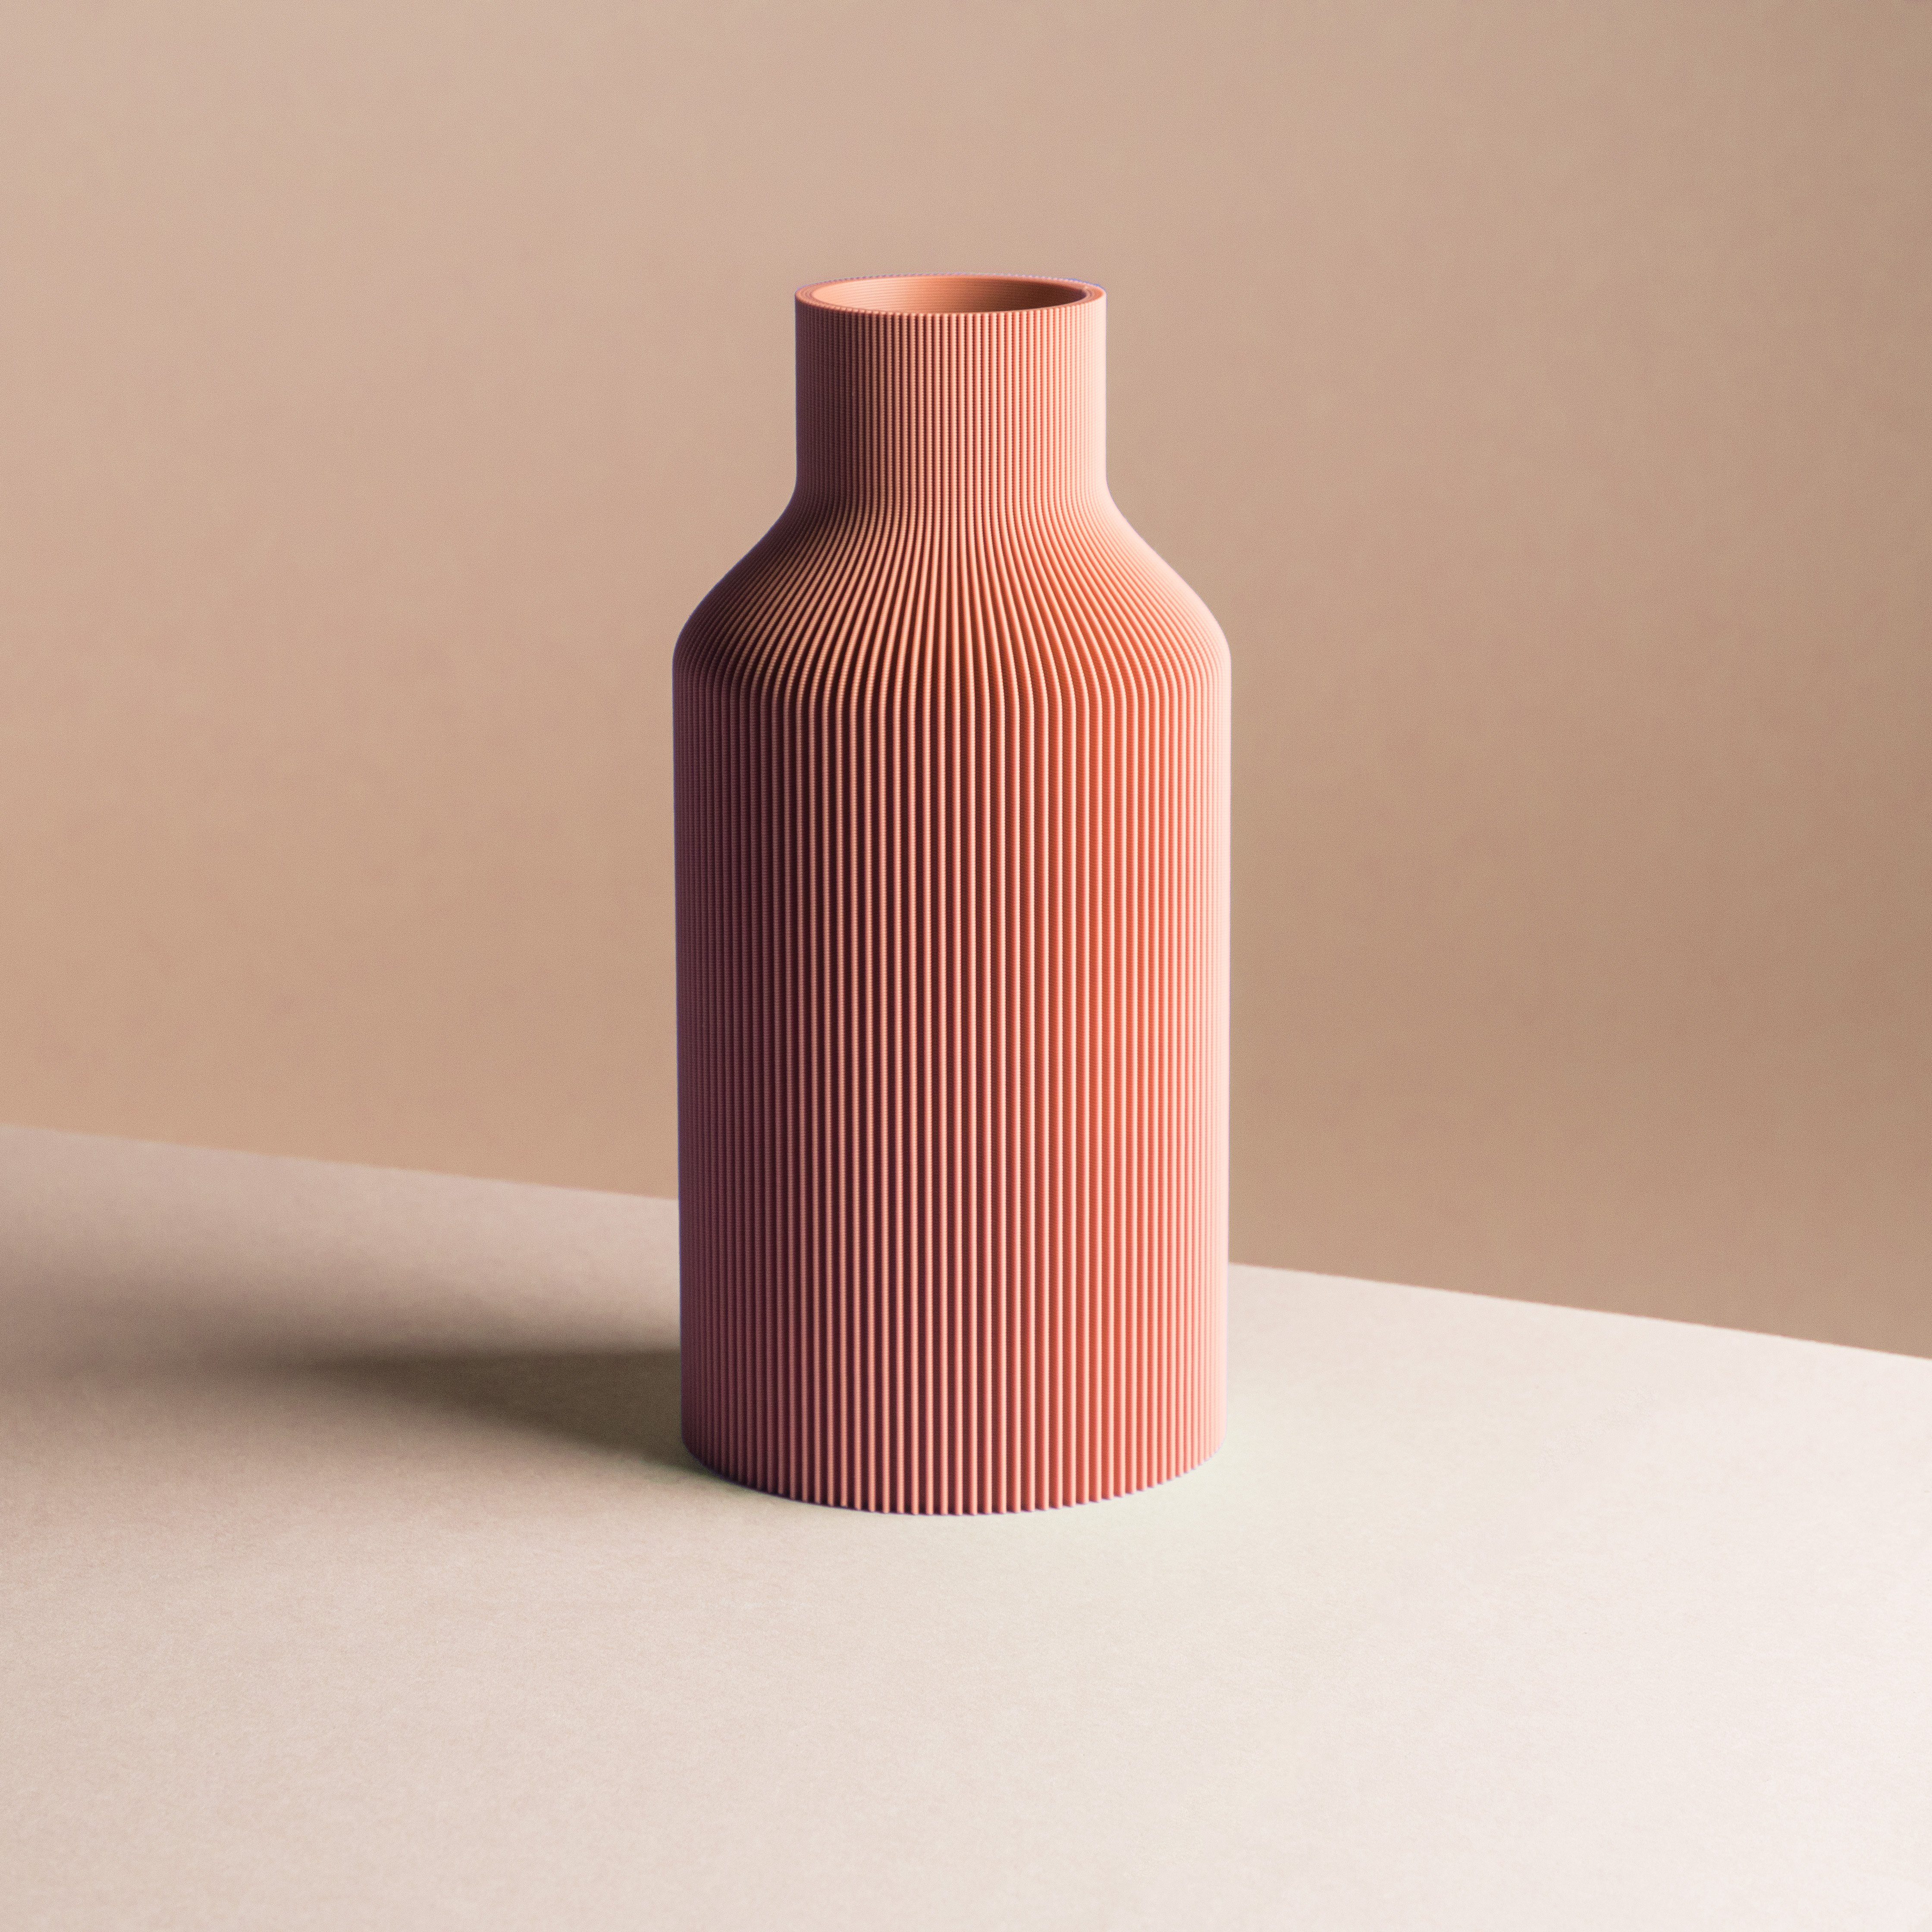 Dennismaass. Dekovase FLASCHE, 3D Druck, für terracotta 3D wundervolle Vase dem dekorative Art, Blumen aus Drucker Rillen-Optik, aller